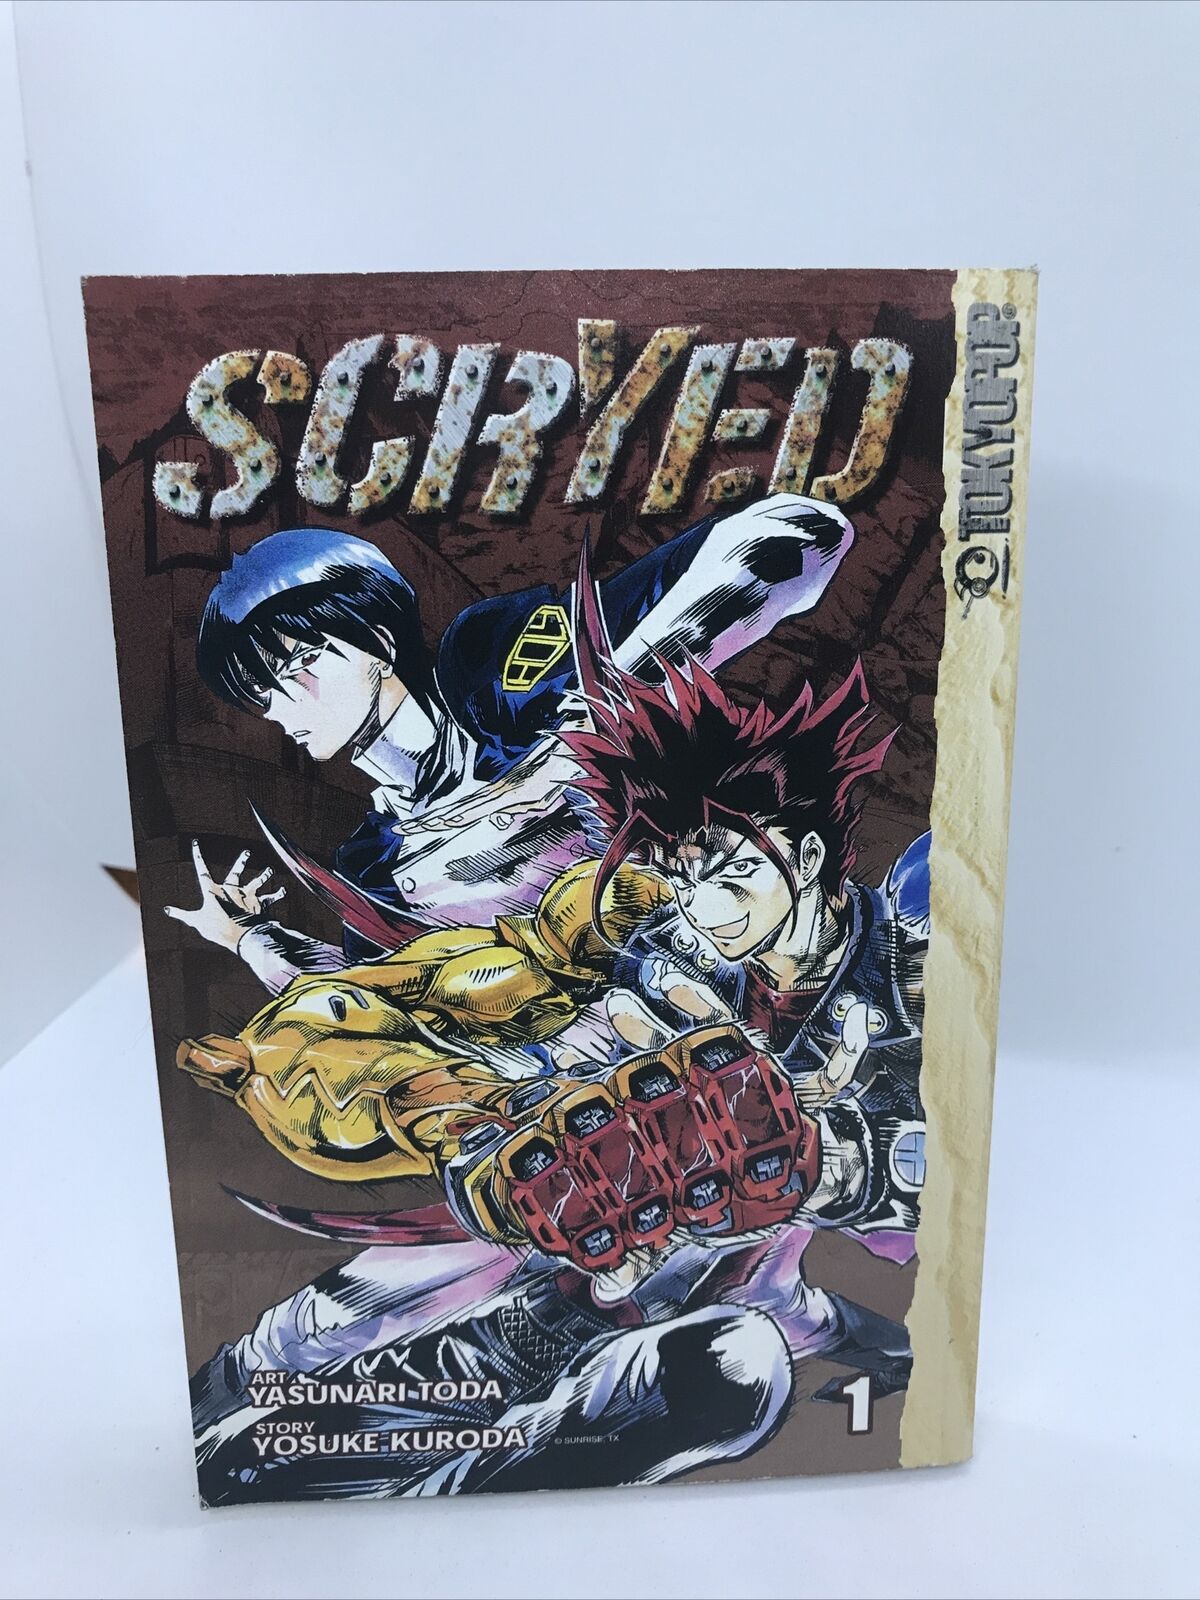 Scryed volume 1 Manga by Yosuke Kuroda And Yasunari Toda